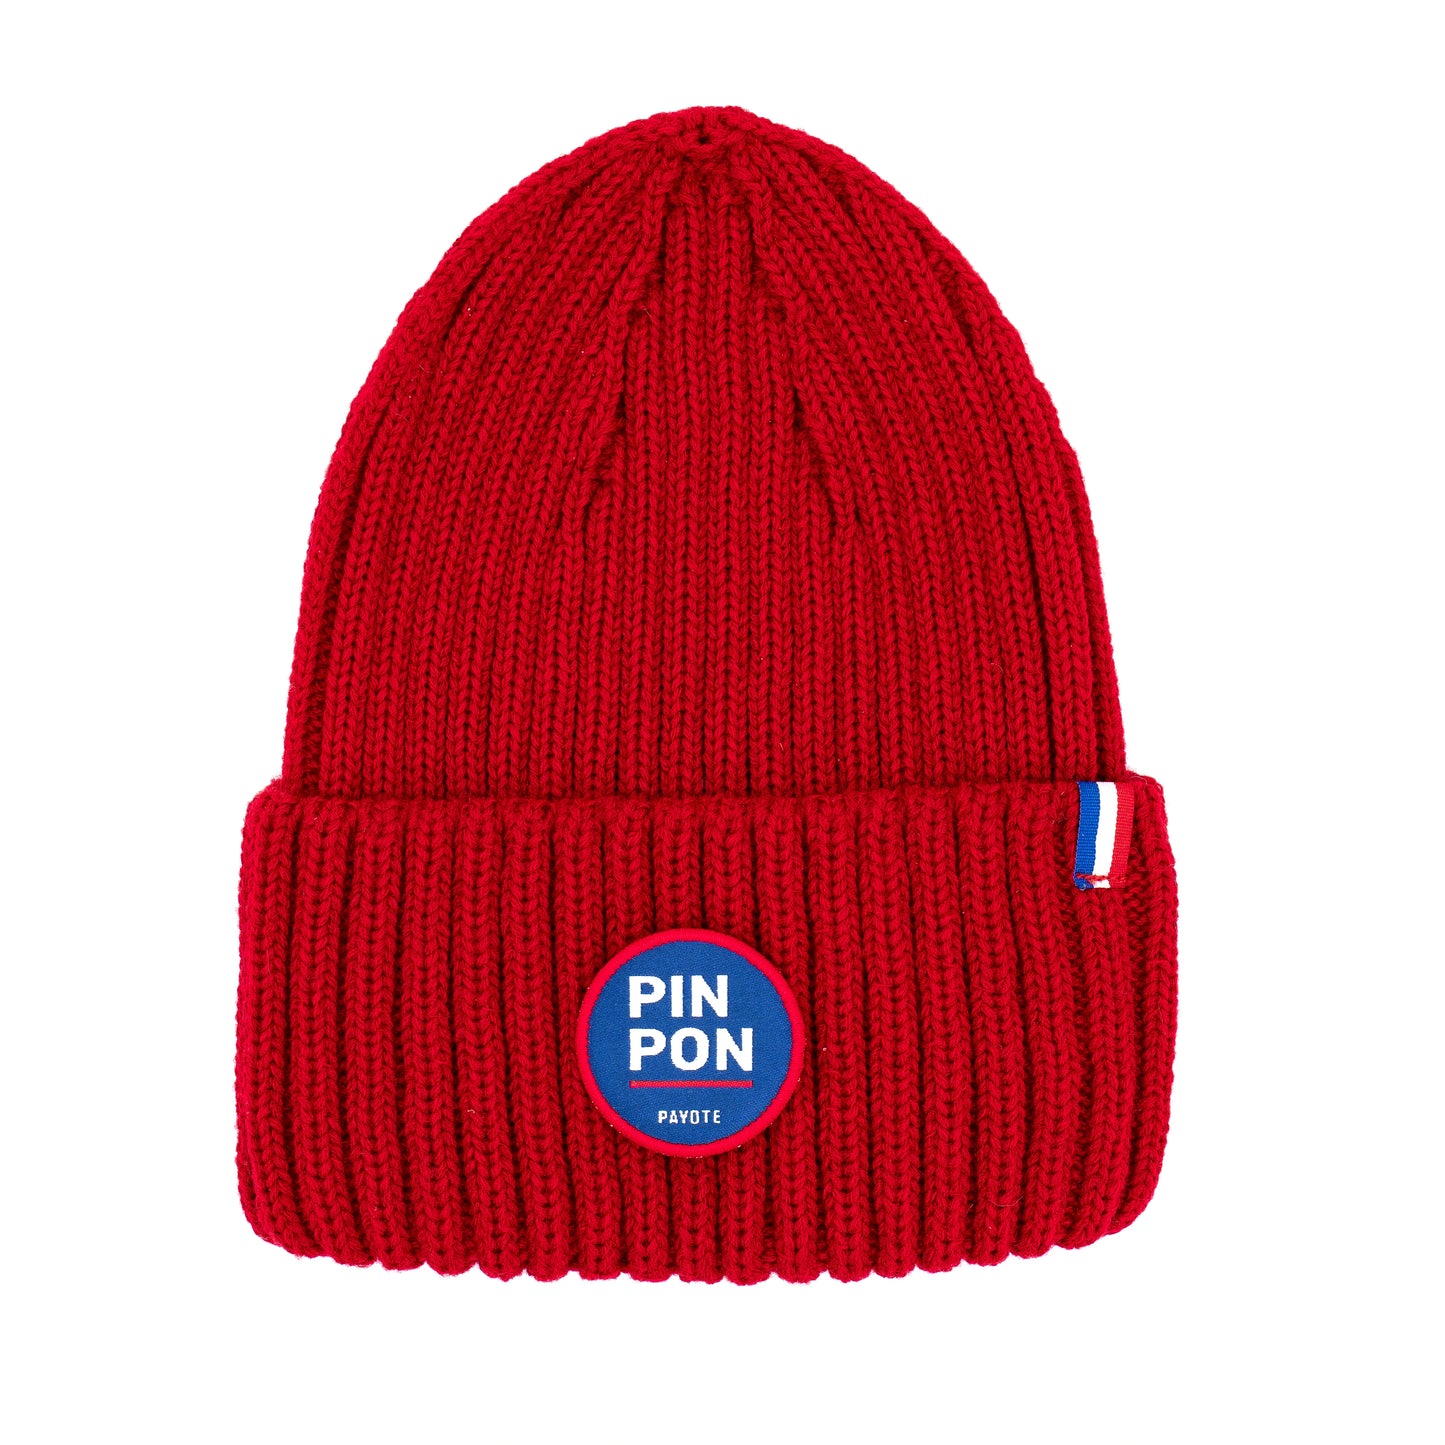 Bonnet rouge Pin Pon solidaire